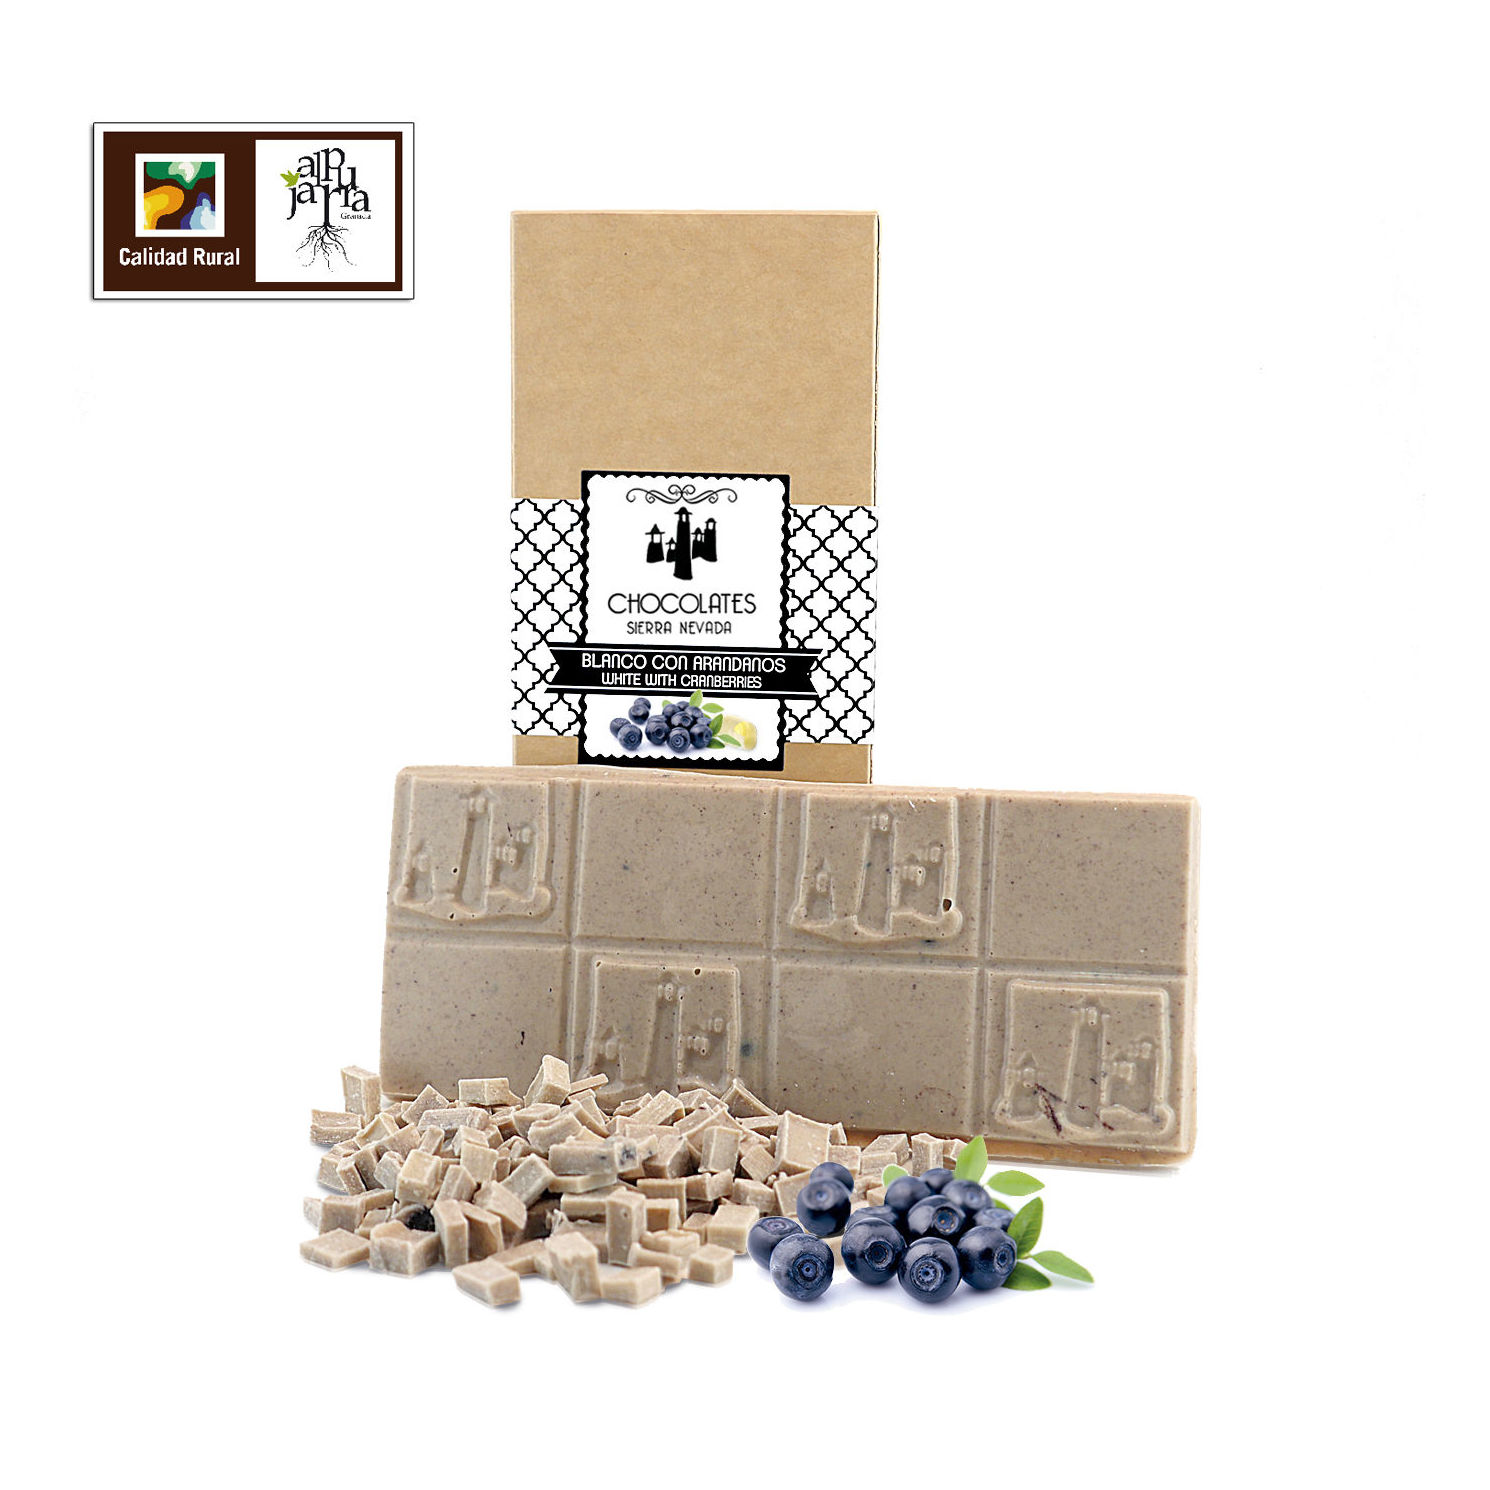 Tableta artesana de chocolate blanco con arándanos: Nuestros productos de Chocolates Sierra Nevada